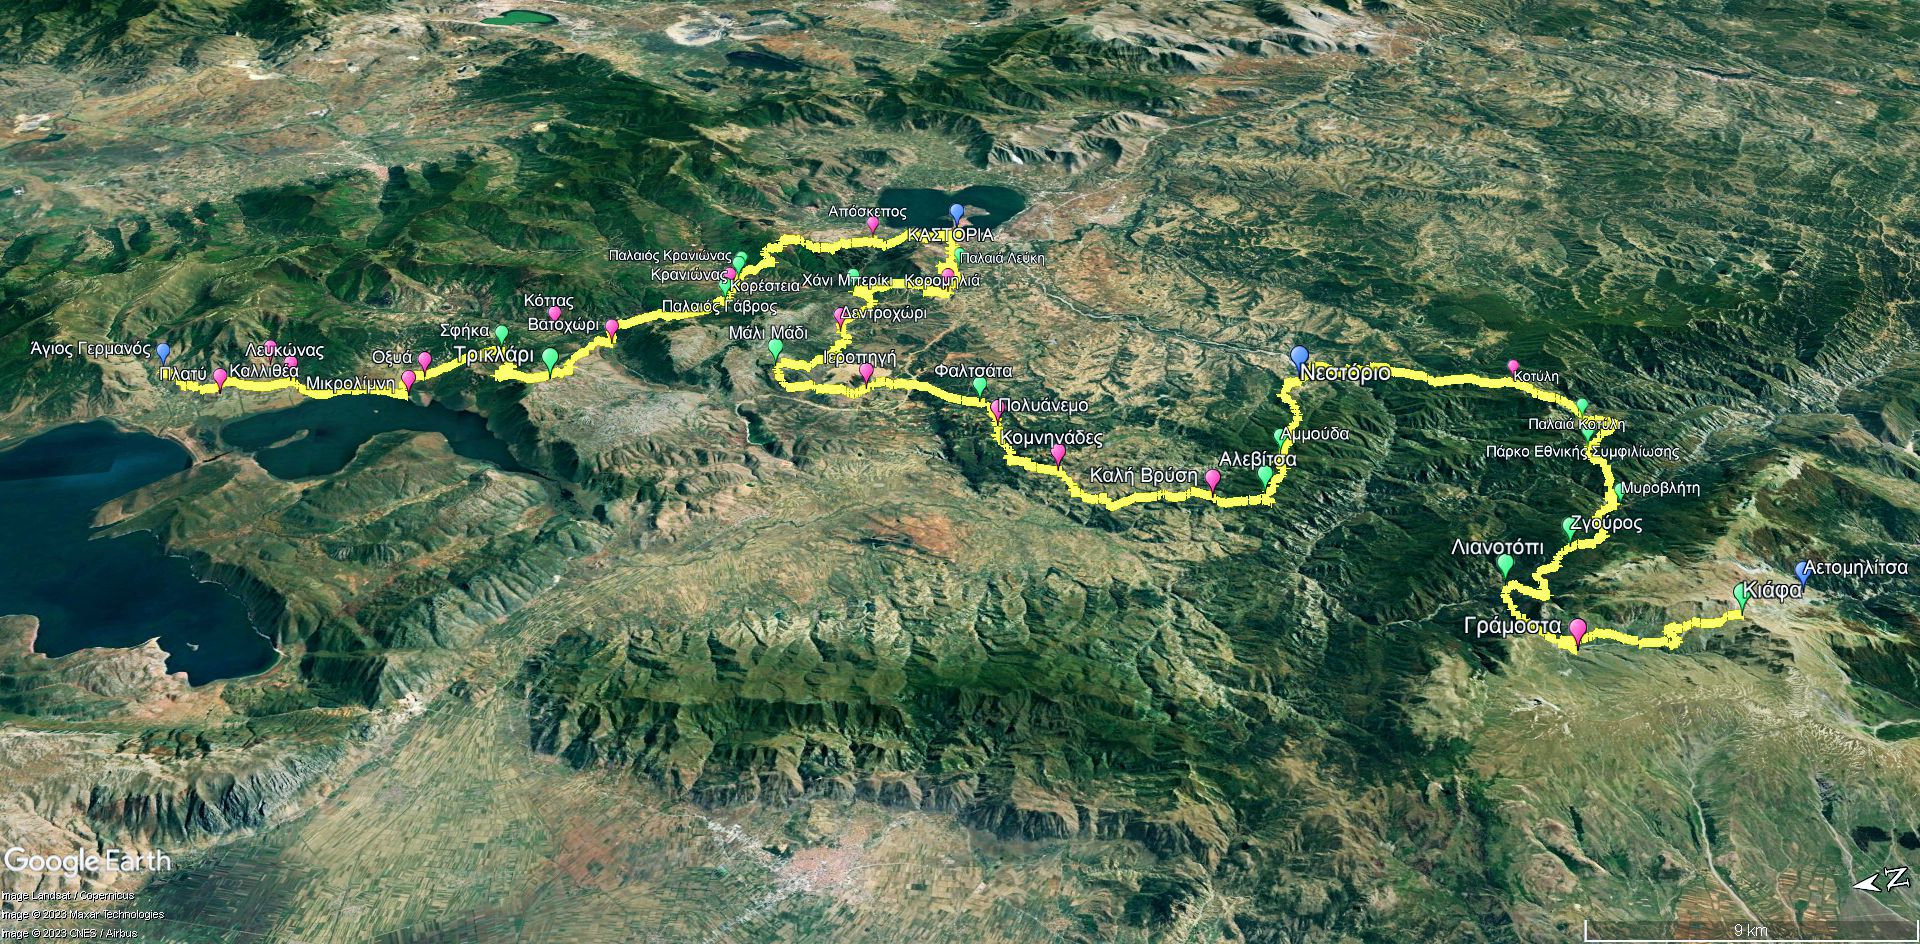 Μεγάλη Διαδρομή Γράμμος-Πρέσπα: Η συνολική διαδρομή των 200 χλμ